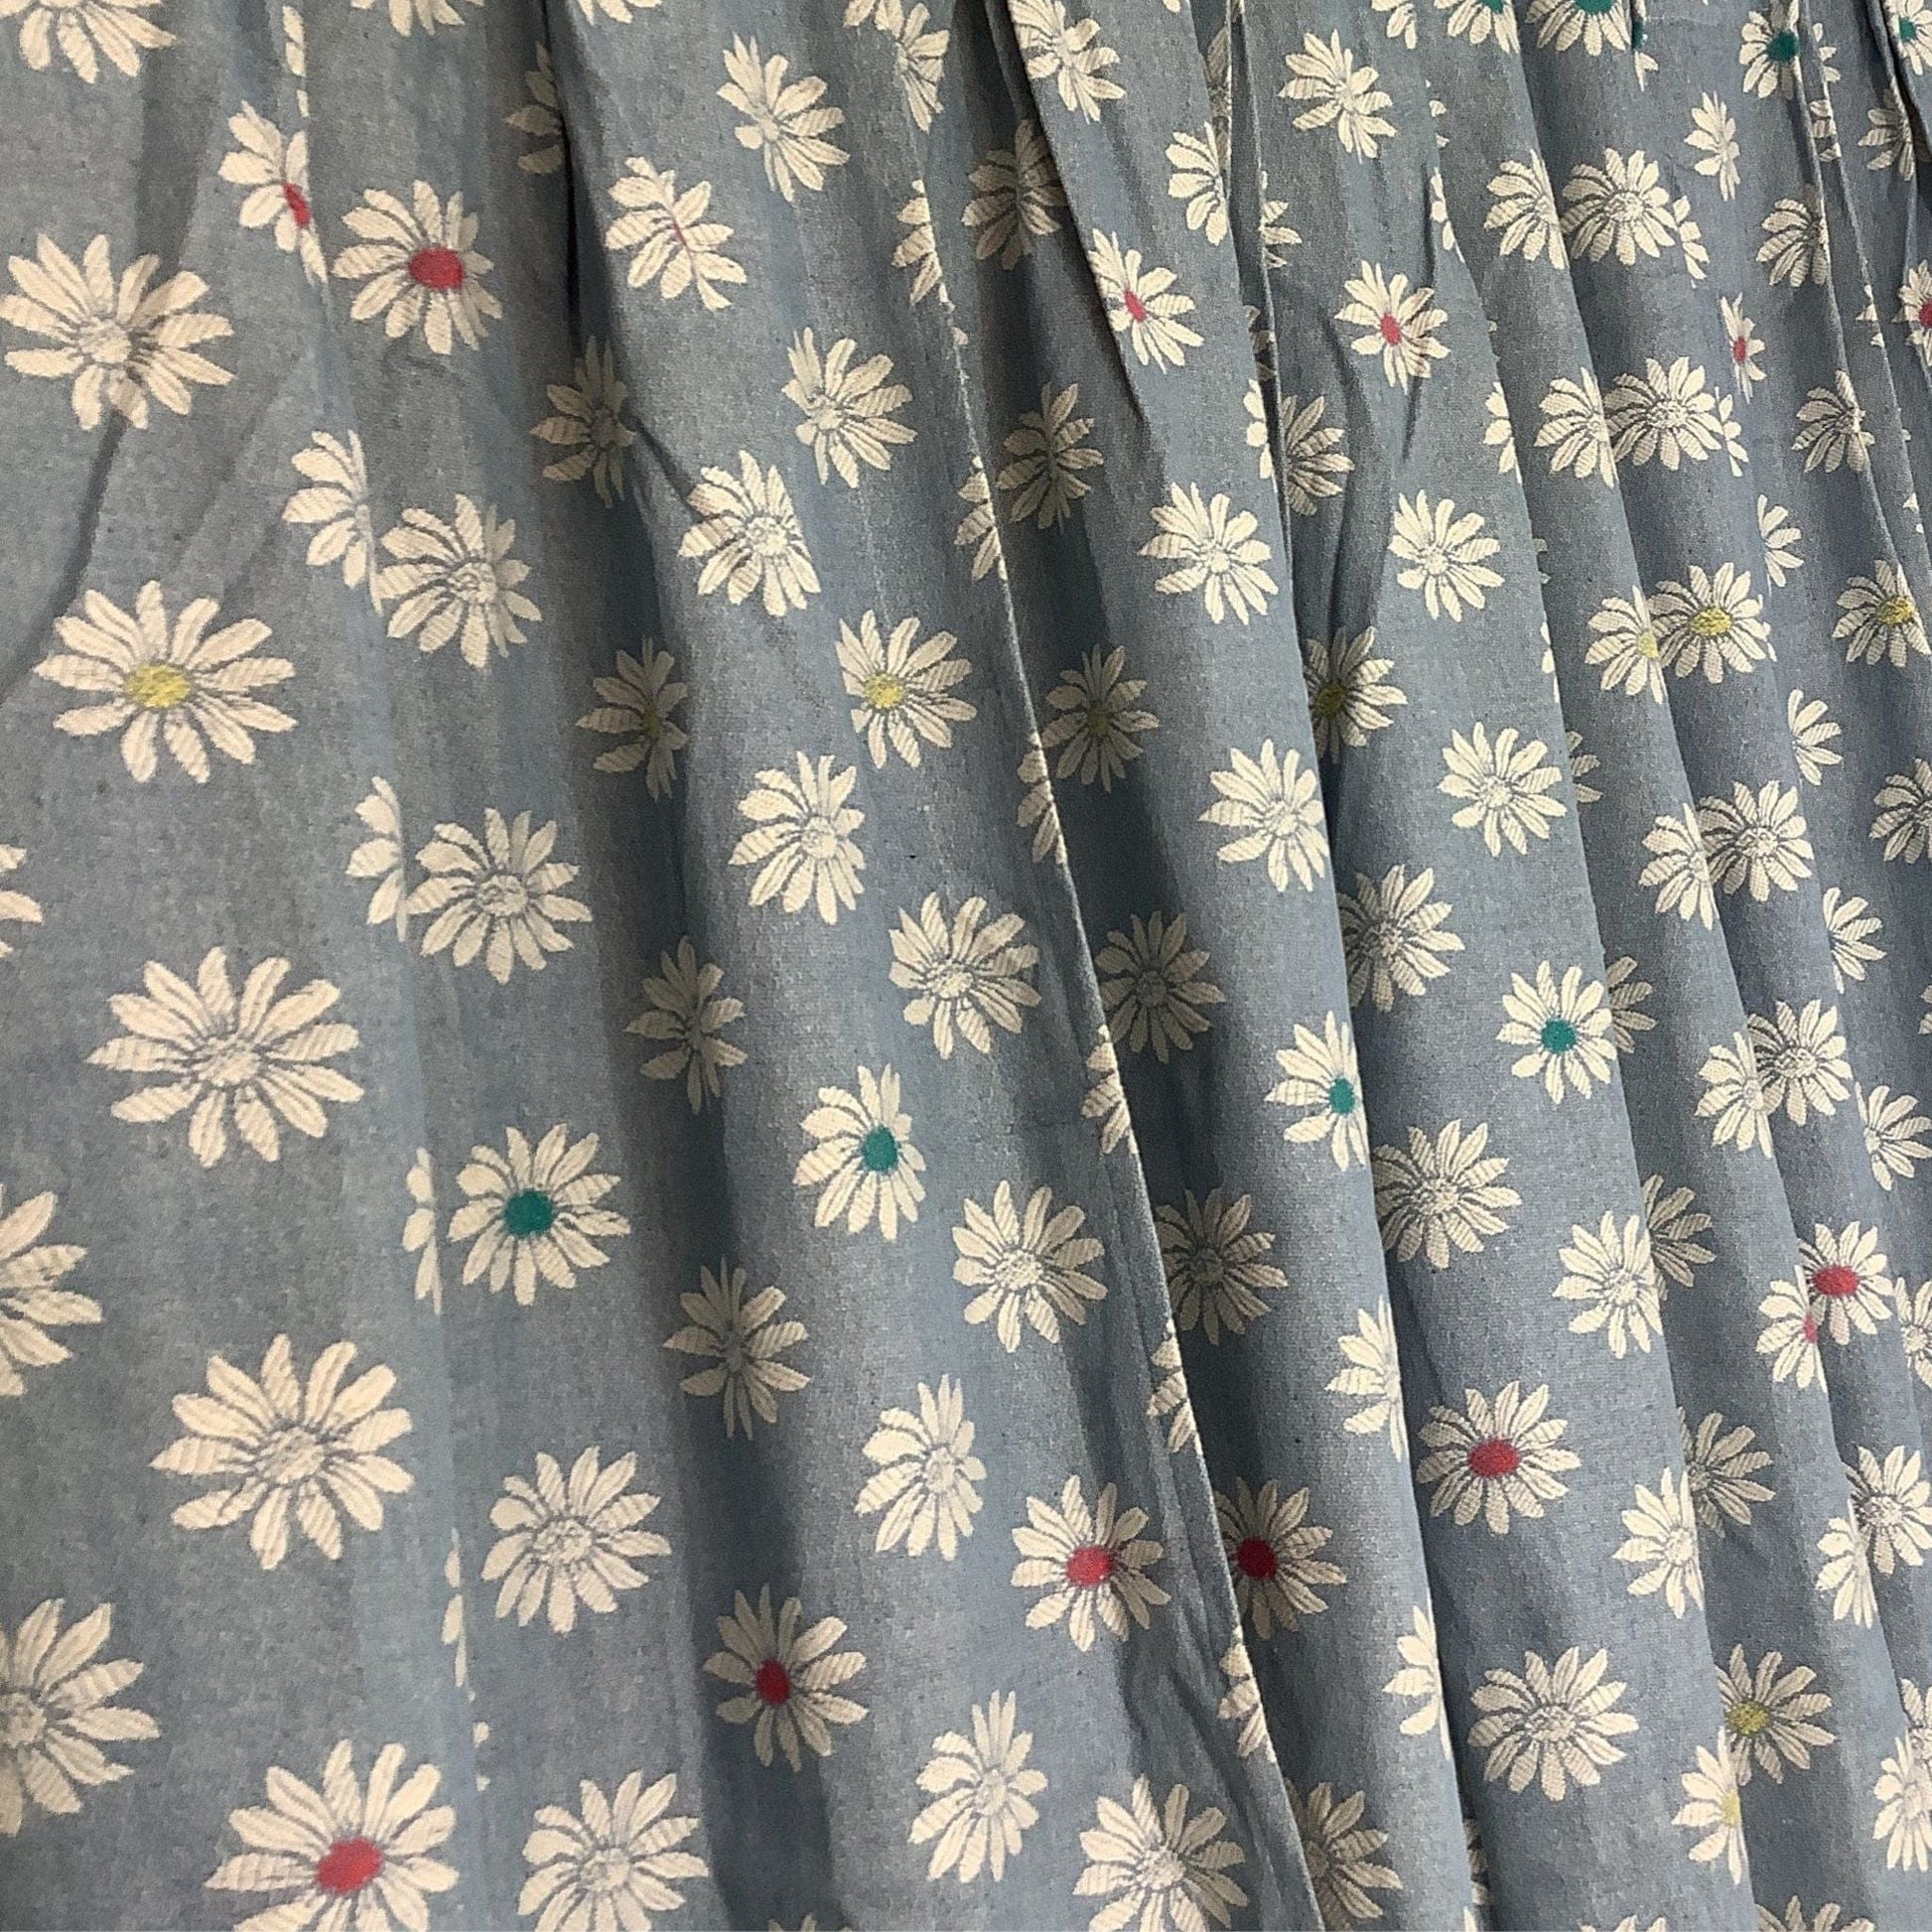 1950s Bates Daisy Curtains Multi / Cotton / Vintage 1950s